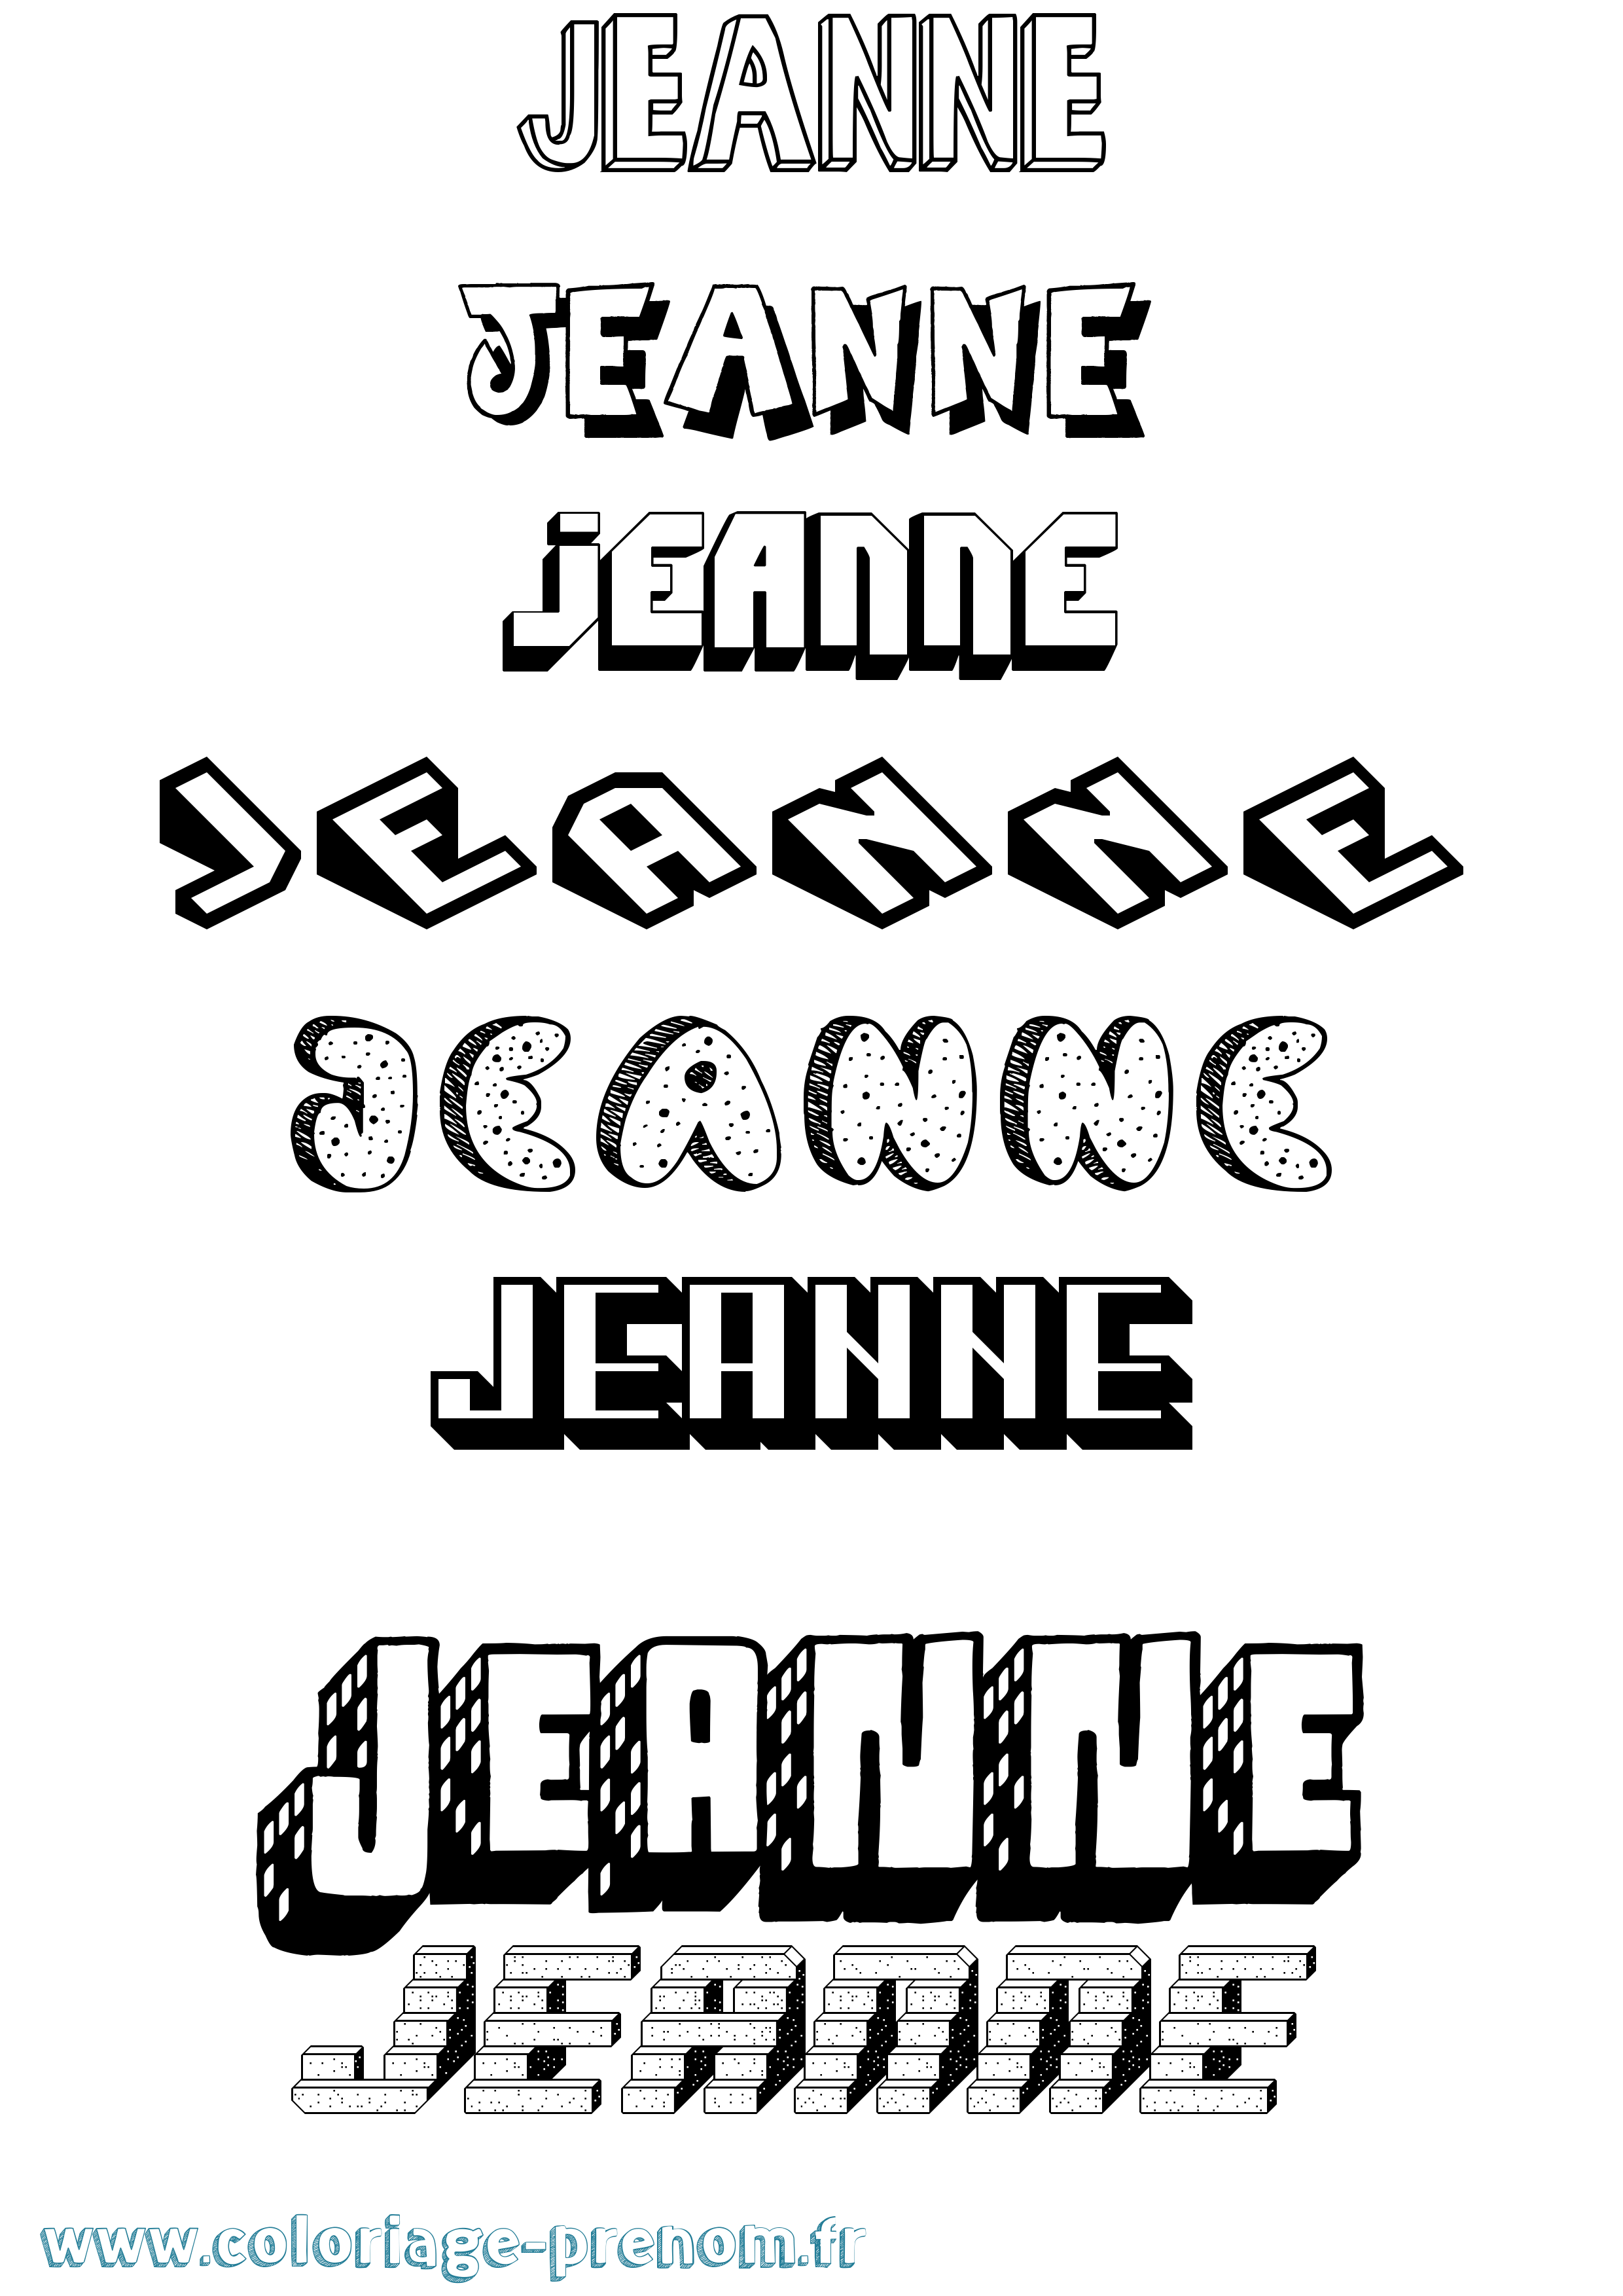 Coloriage prénom Jeanne Effet 3D